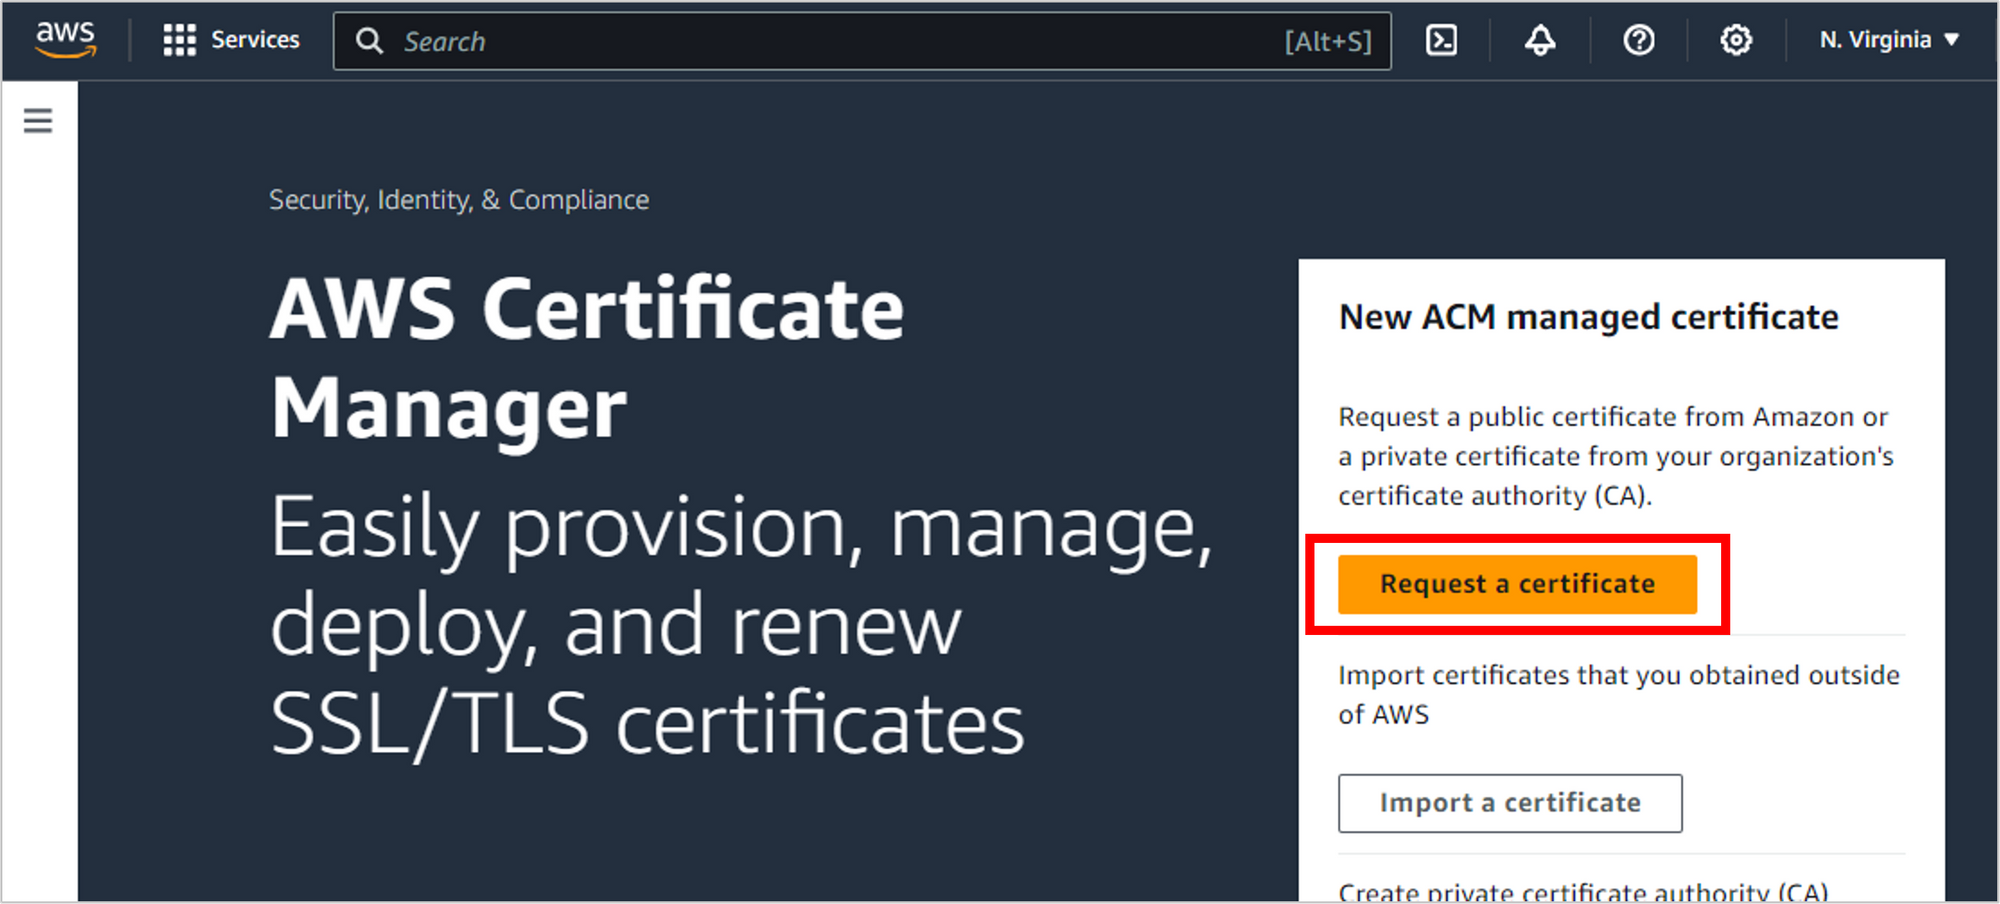 Request-a-certificate